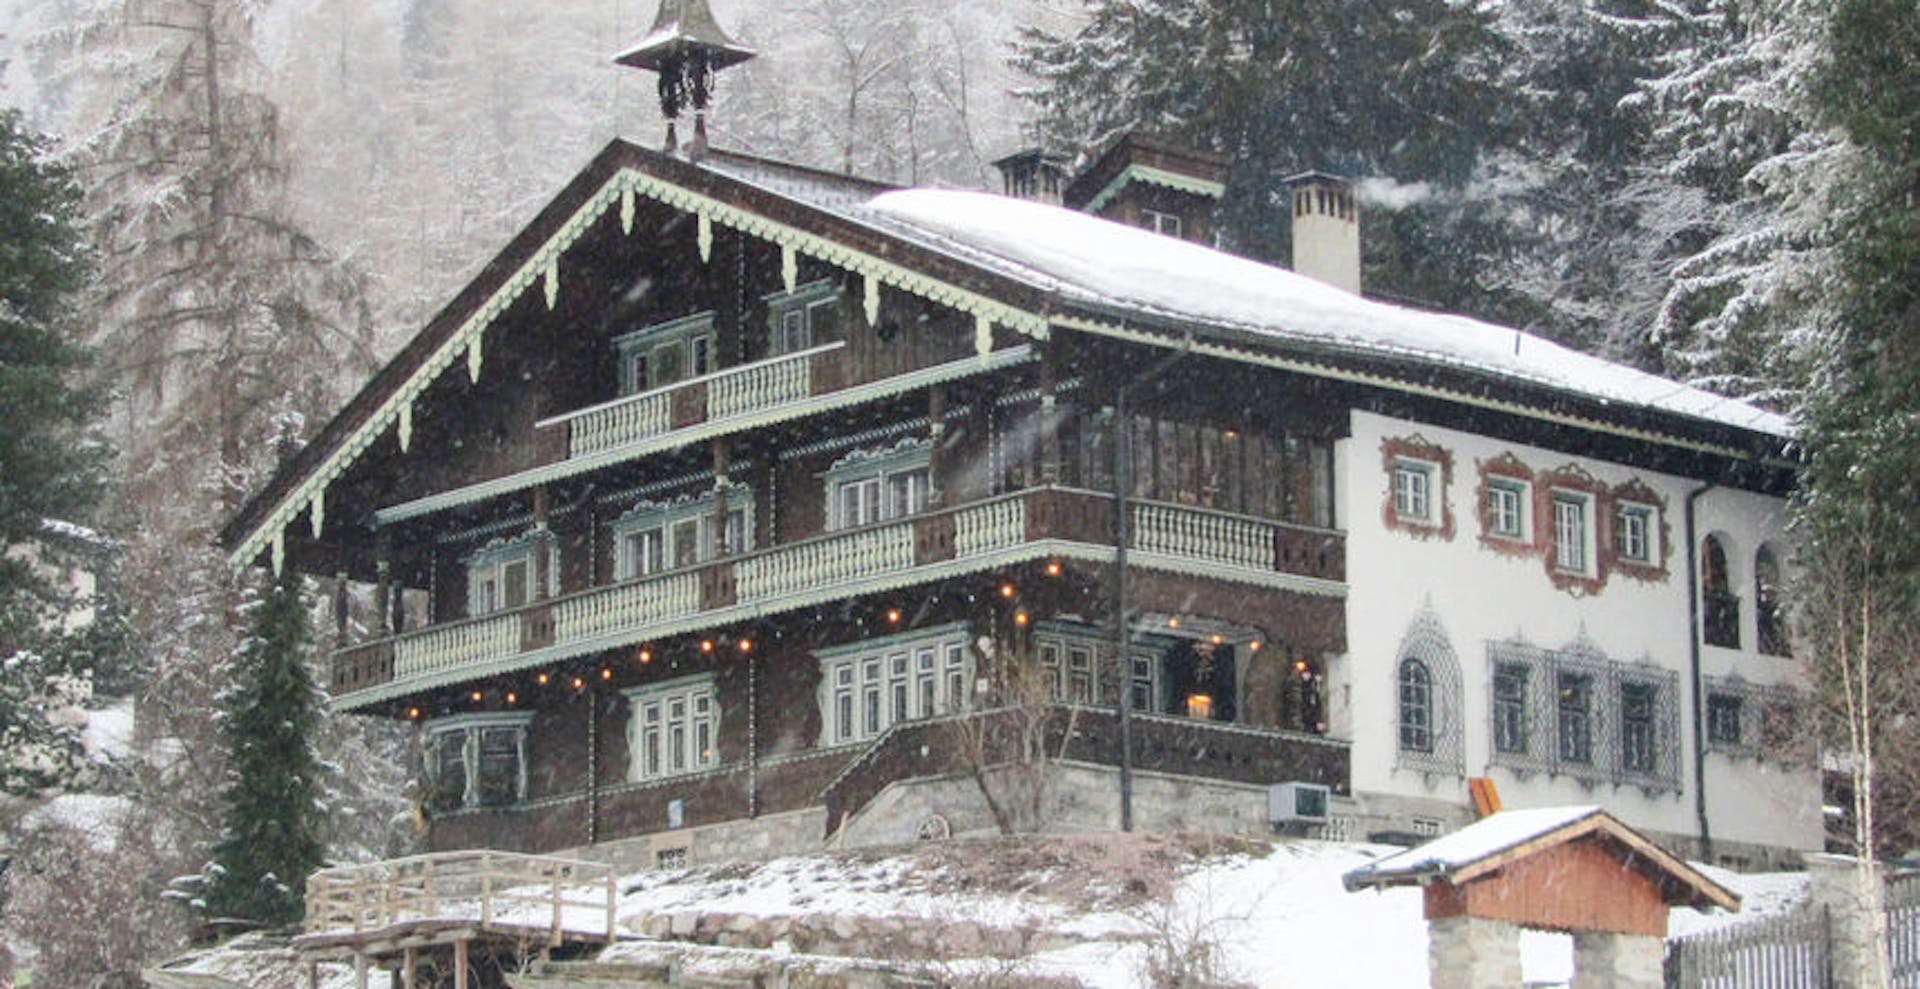 St Anton Ski Museum